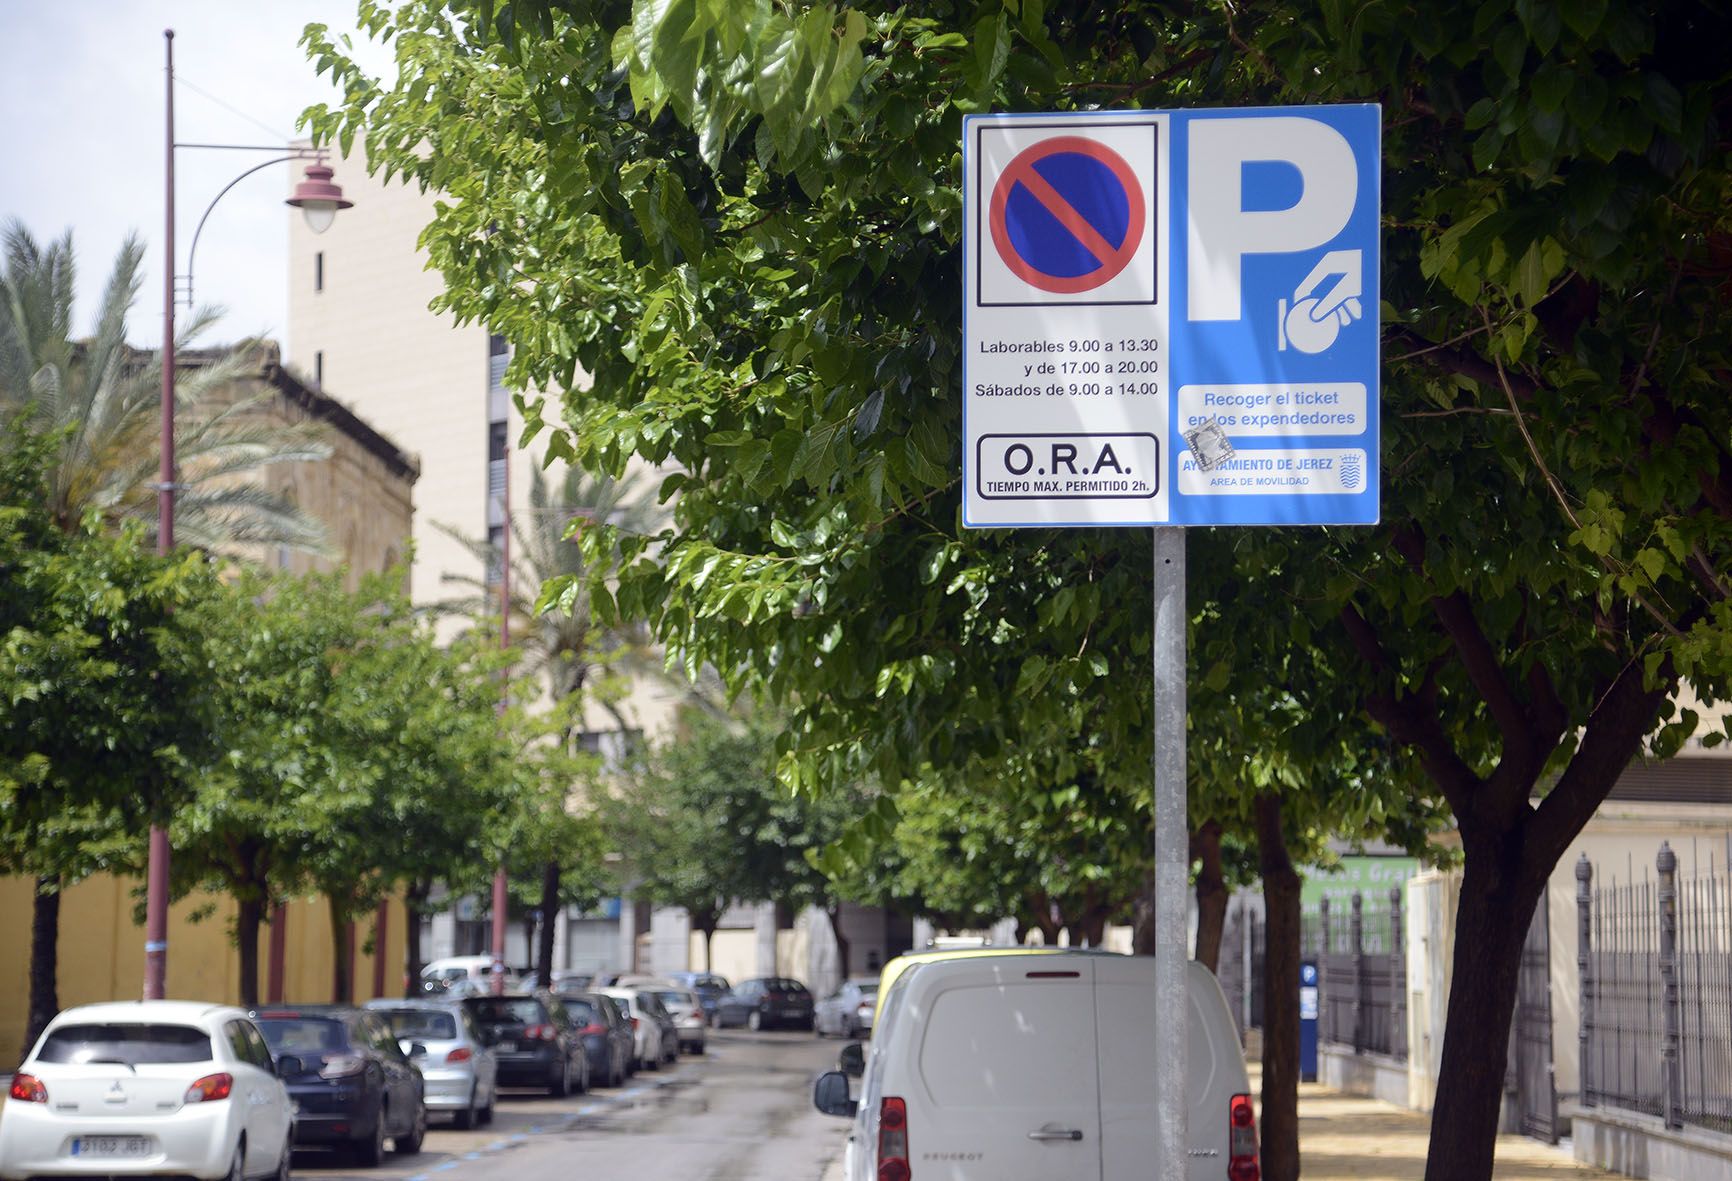 Señal en Jerez de zona de aparcamientos regulada, conocida como la ORA.